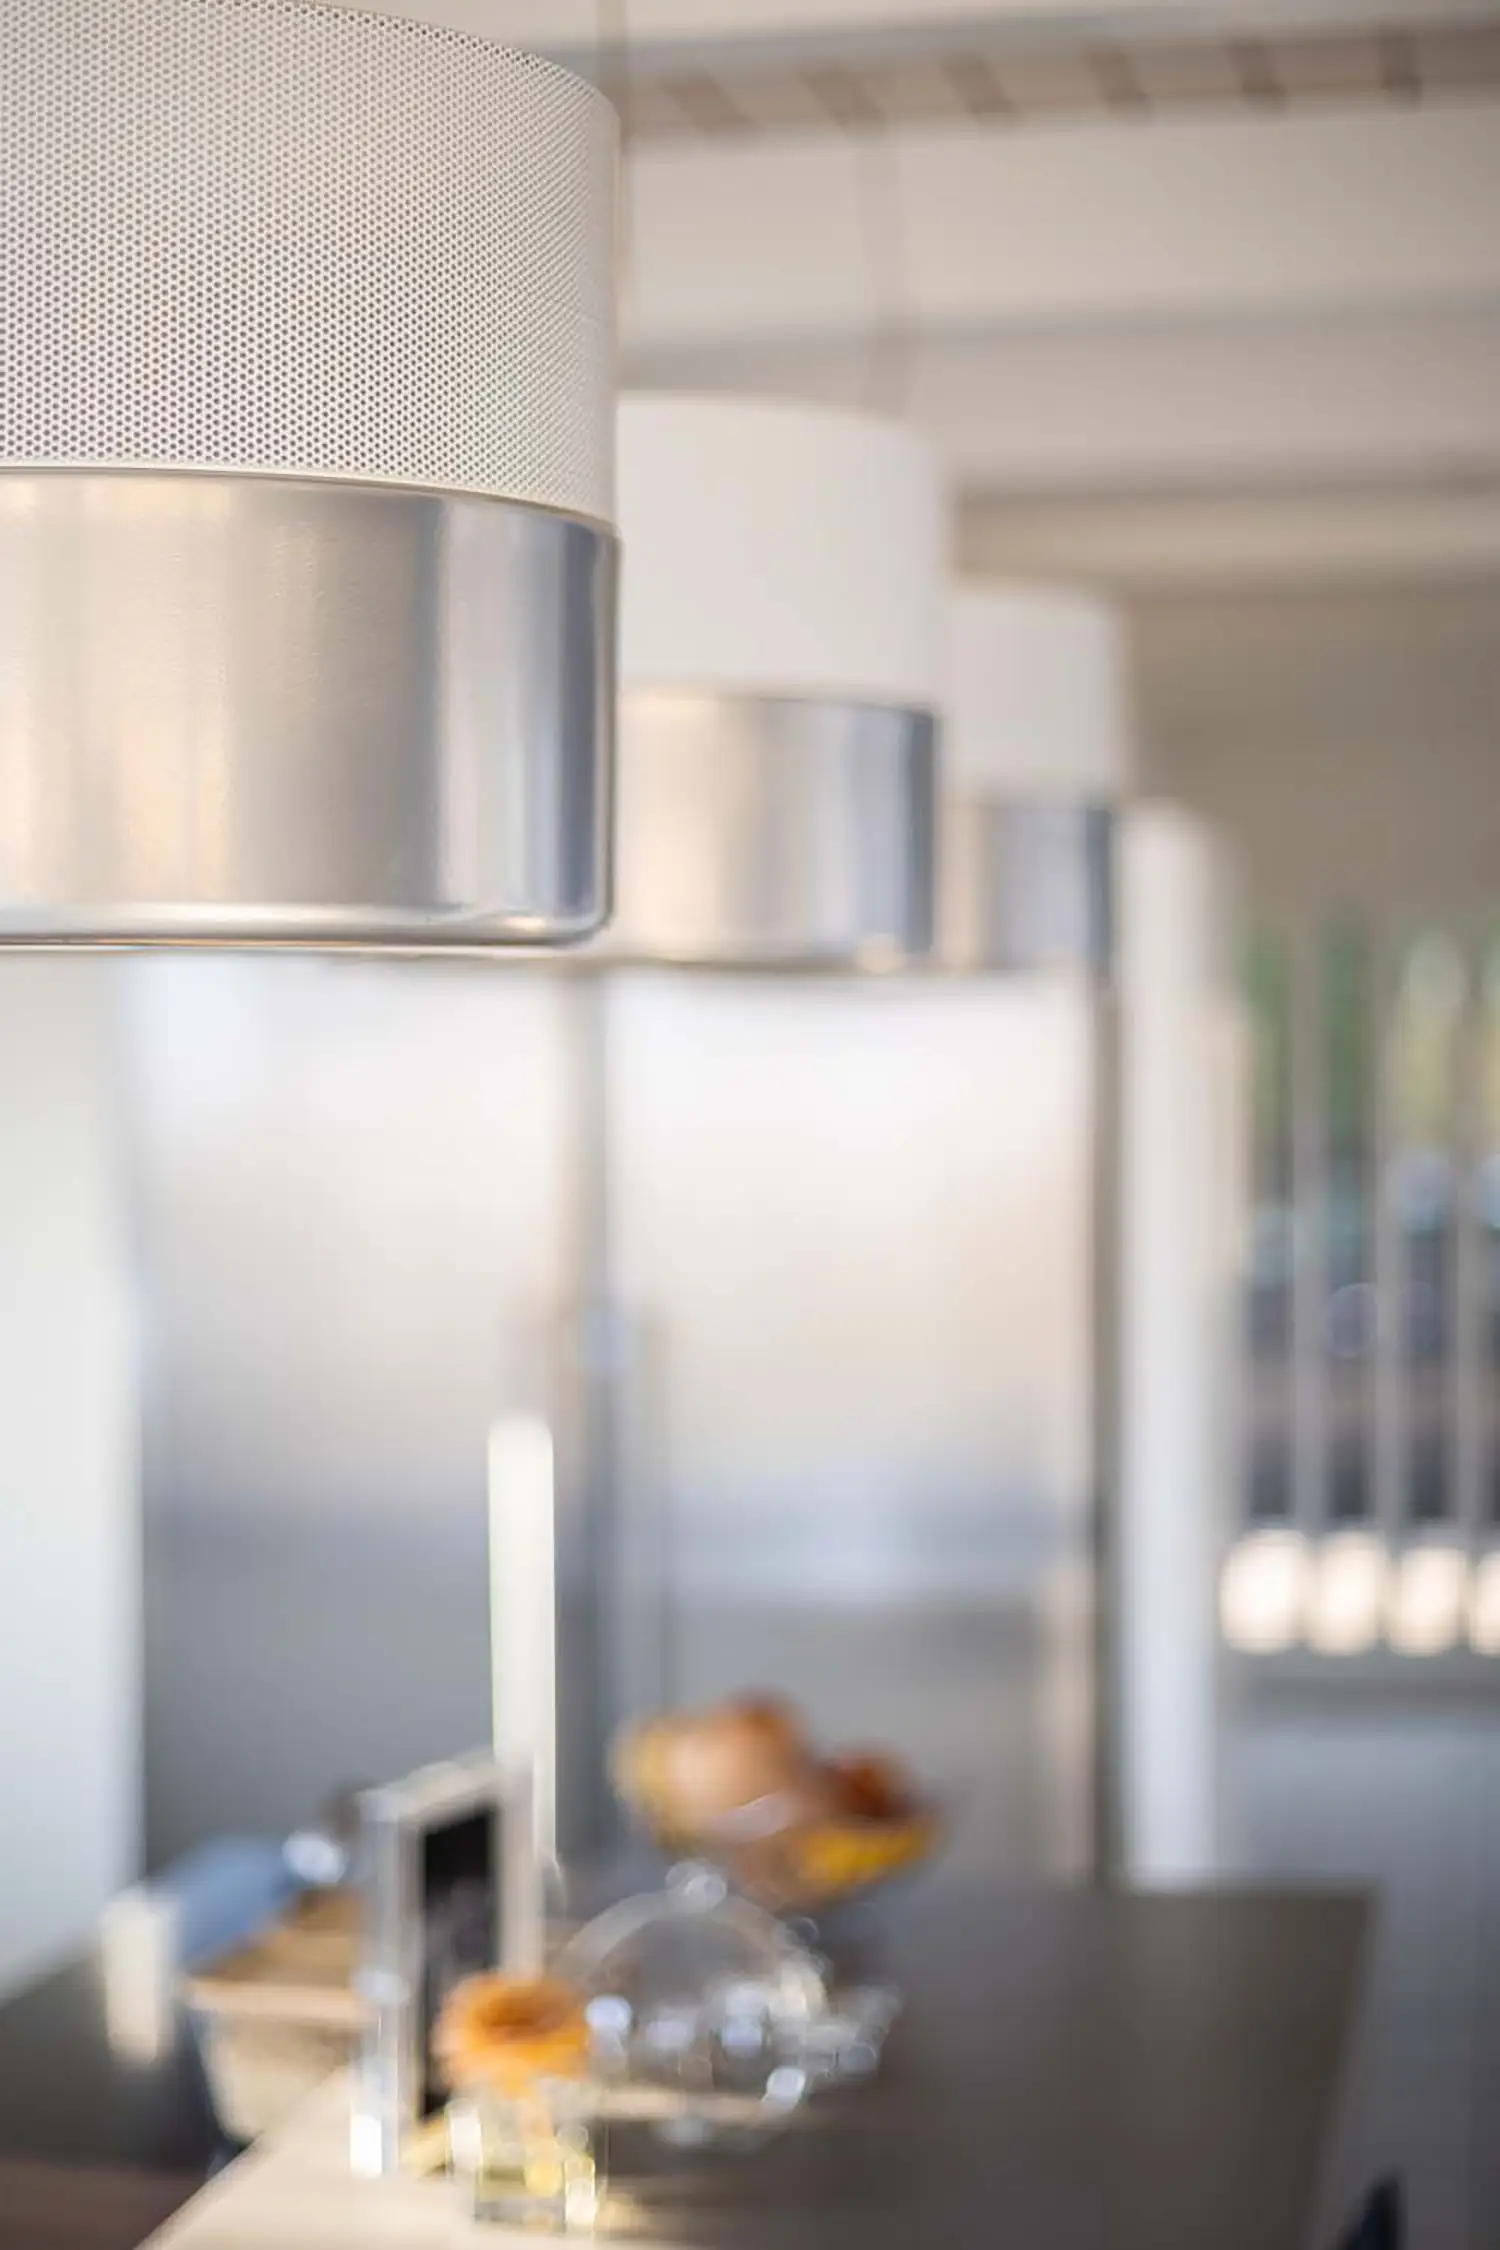 Foto prolungamento isola cucina con dettaglio sull’illuminazione a soffitto di lampade di desing in vetro e metallo, progetto di ristrutturazione dello studio Elles Interior Design.